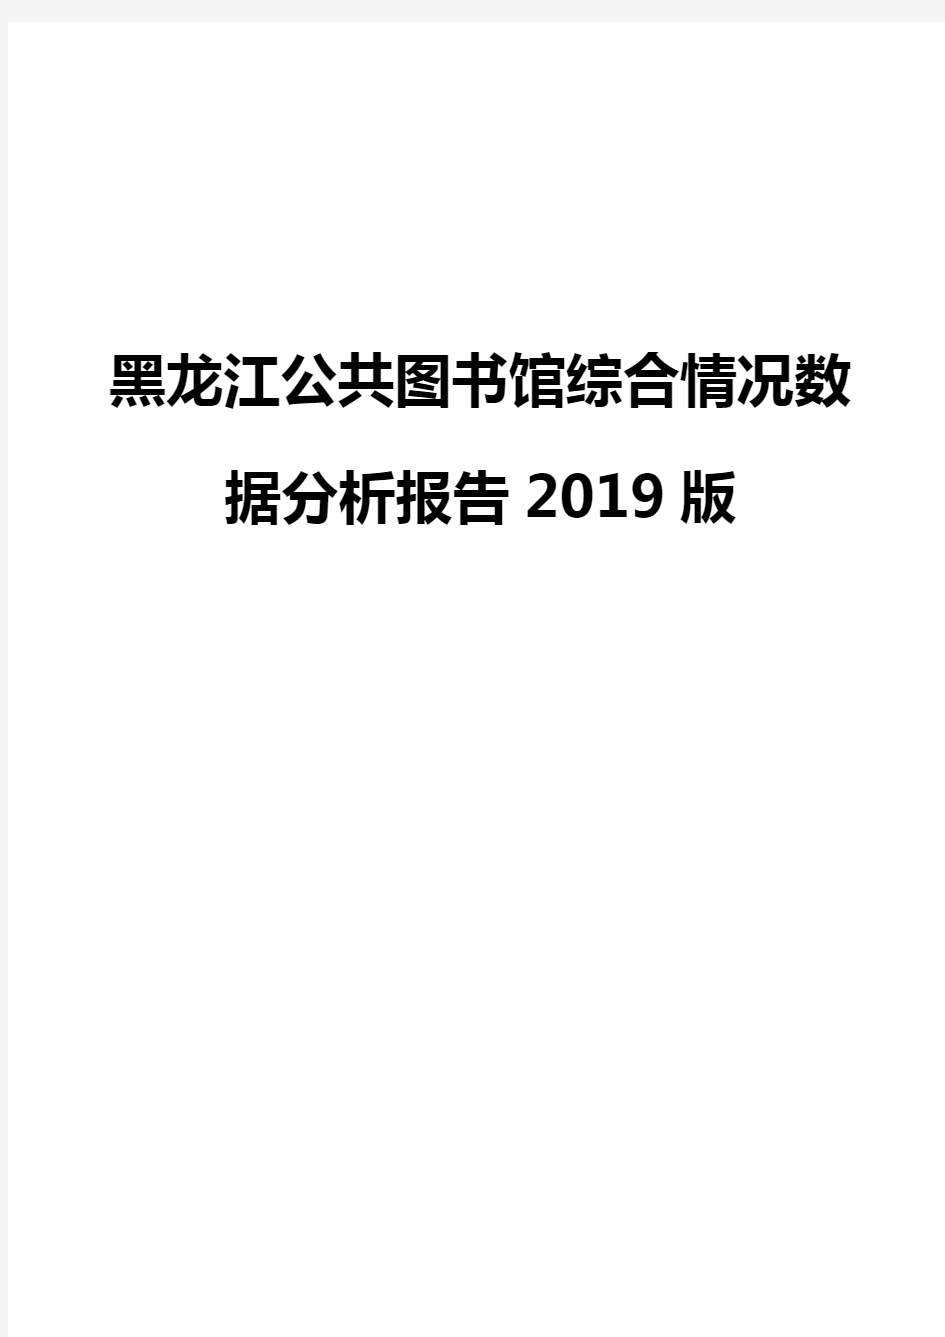 黑龙江公共图书馆综合情况数据分析报告2019版